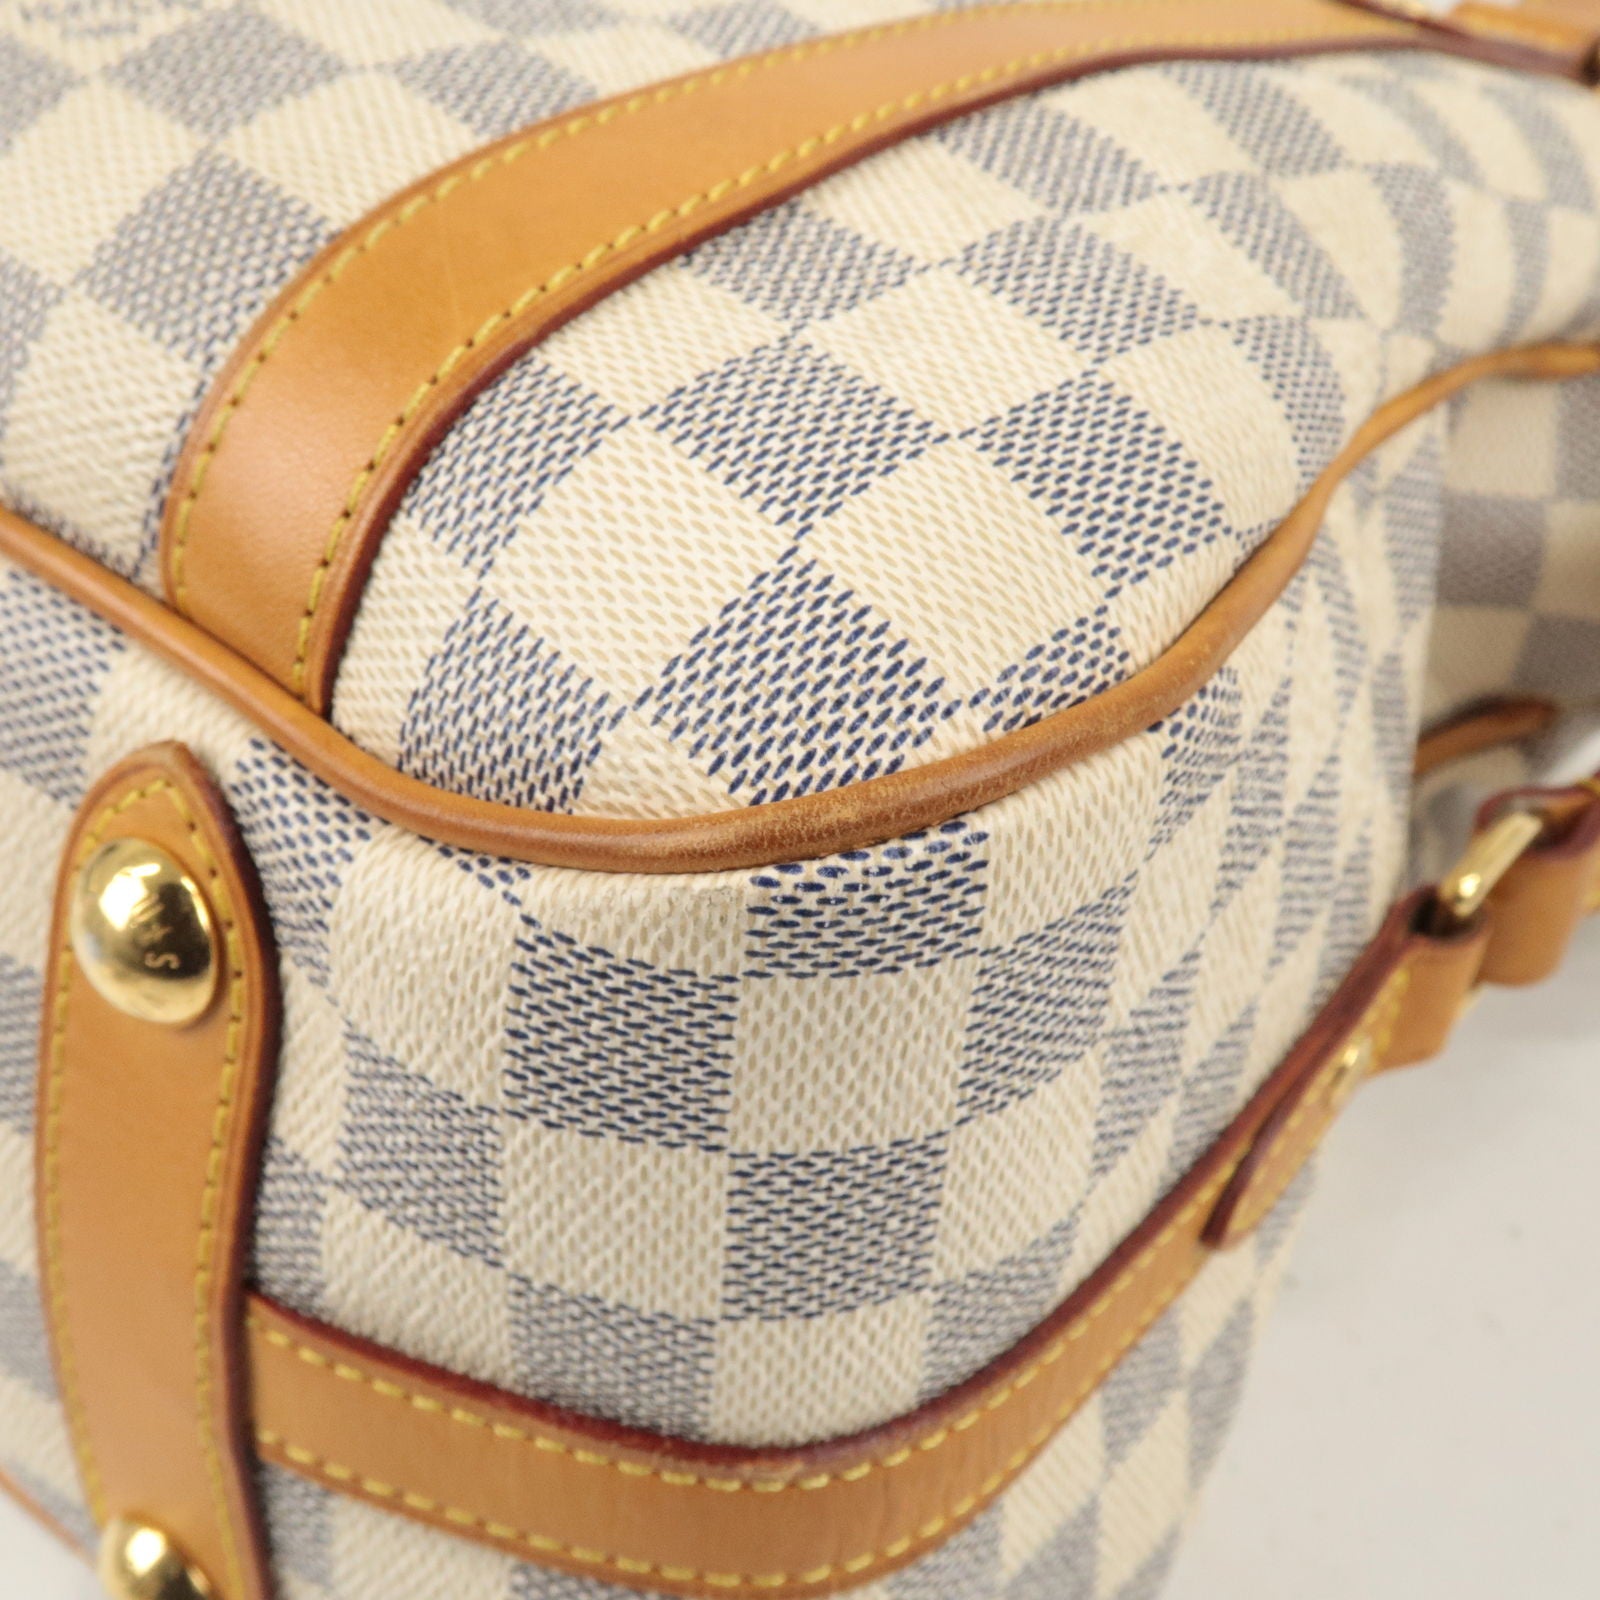 Louis Vuitton Damier Azur Stresa PM - Neutrals Handle Bags, Handbags -  LOU775338